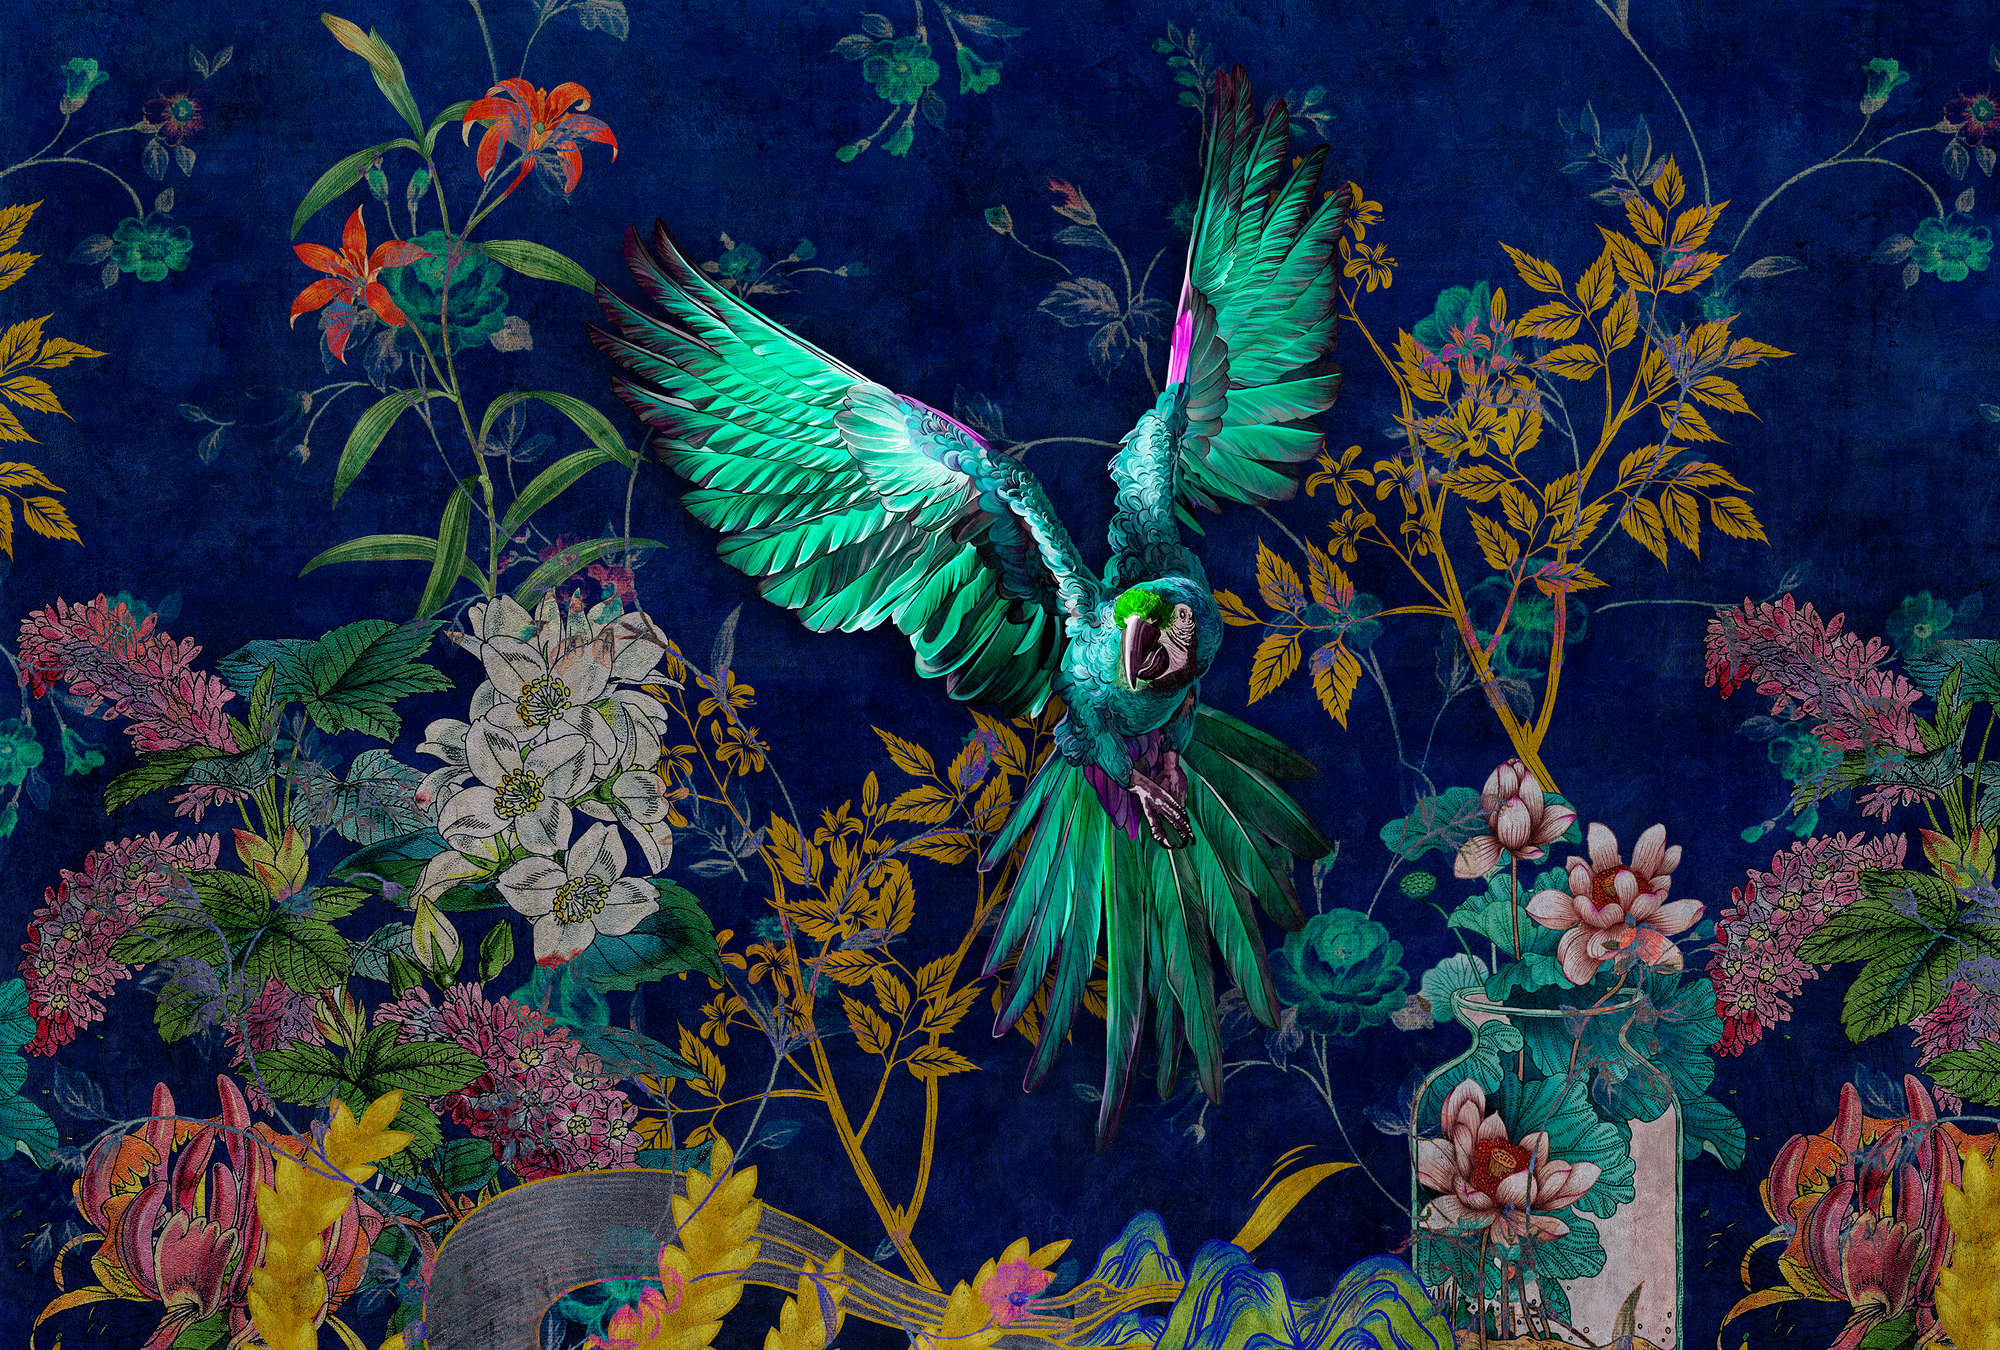             Tropical Hero 1 - papier peint fleurs & perroquet couleurs intenses
        